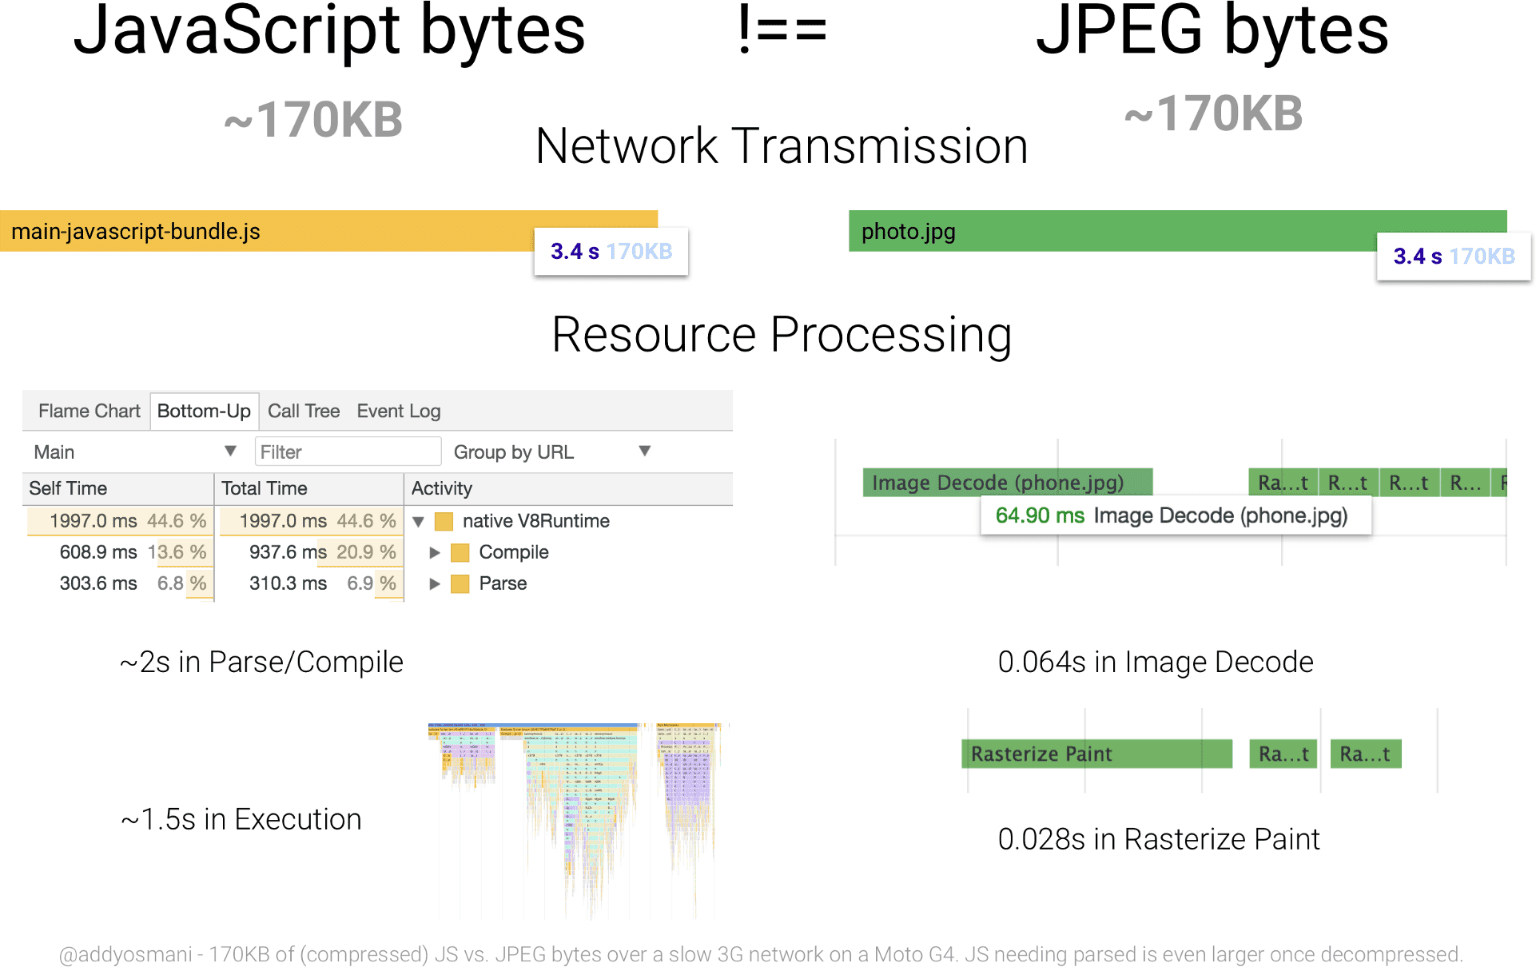 תרשים שמשווה את זמן העיבוד של 170KB של JavaScript לעומת תמונת JPEG בגודל שווה. הבייטים של משאב ה-JavaScript גדולים יותר ביחס לבייטים ב-JPEG.